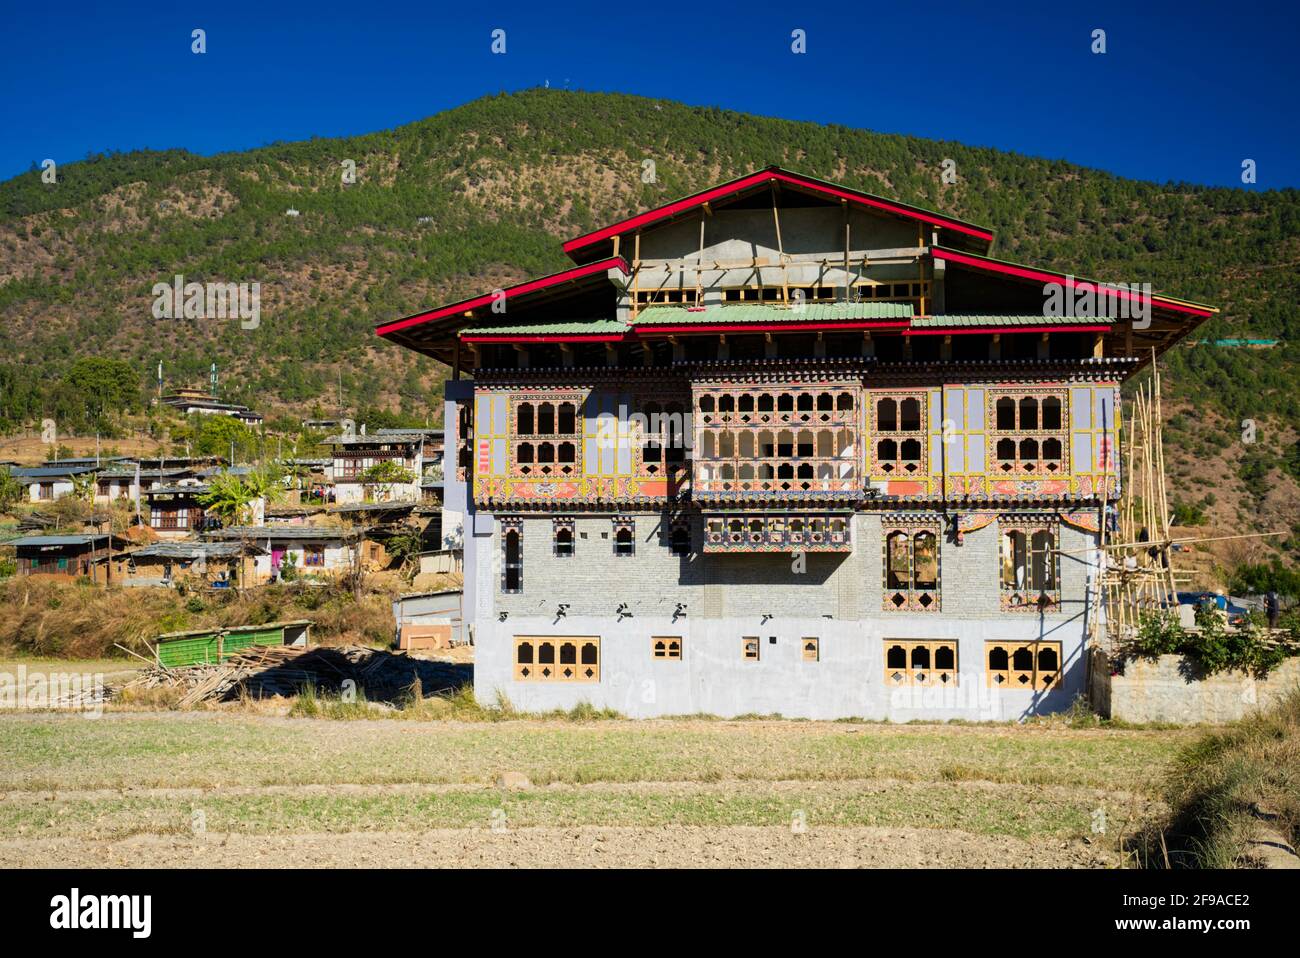 Après une courte randonnée à travers ces champs, on atteindrait un autre village appelé Lobena, connu pour leur magnifique art bhoutanais Thangka et Mani Sto Banque D'Images